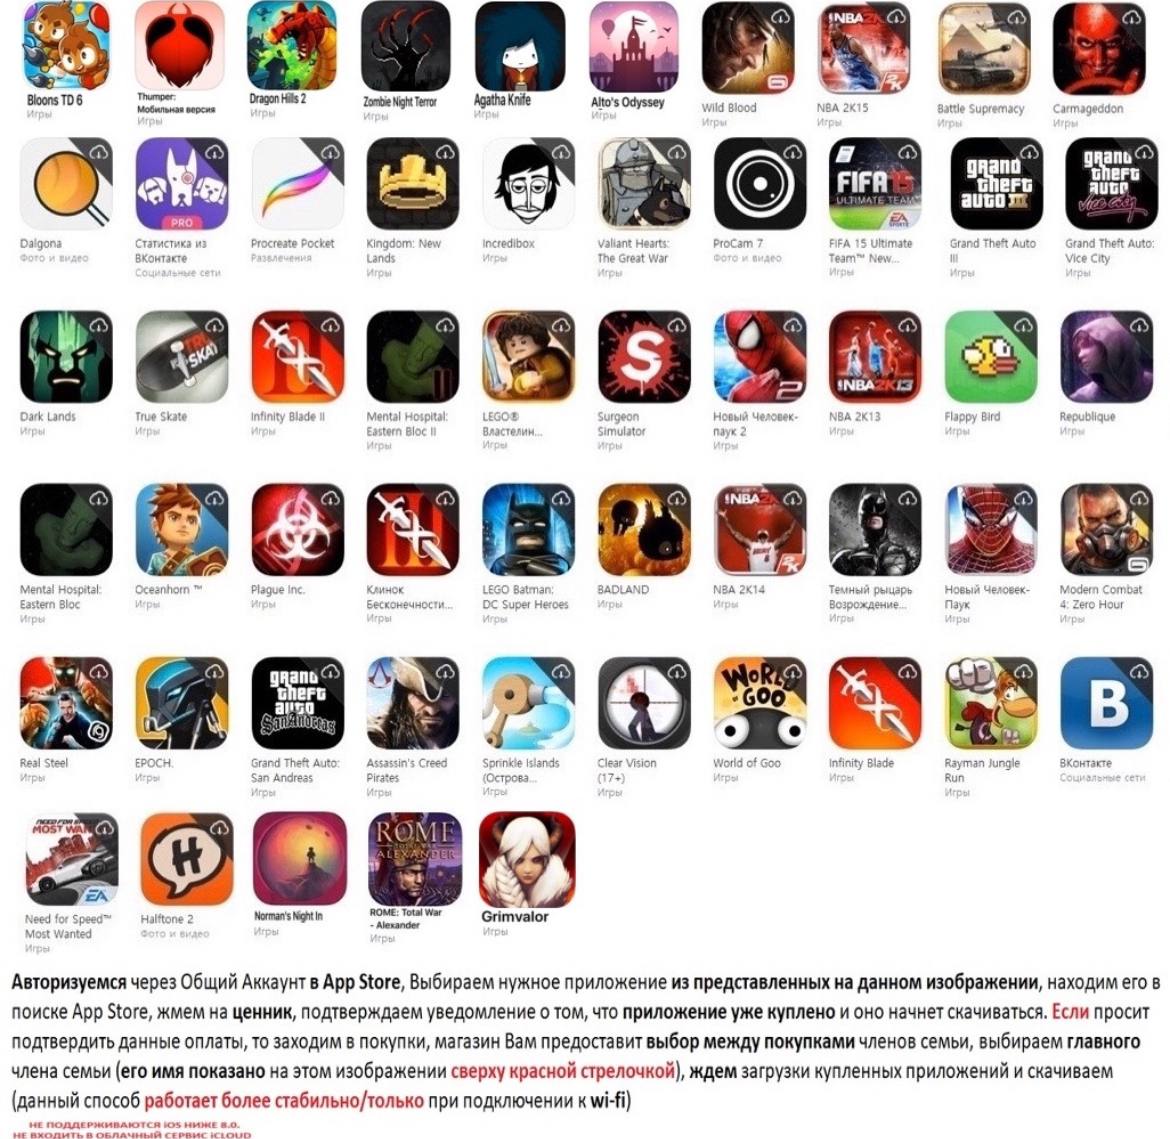 Общие аккаунты app store бесплатно телеграмм (119) фото